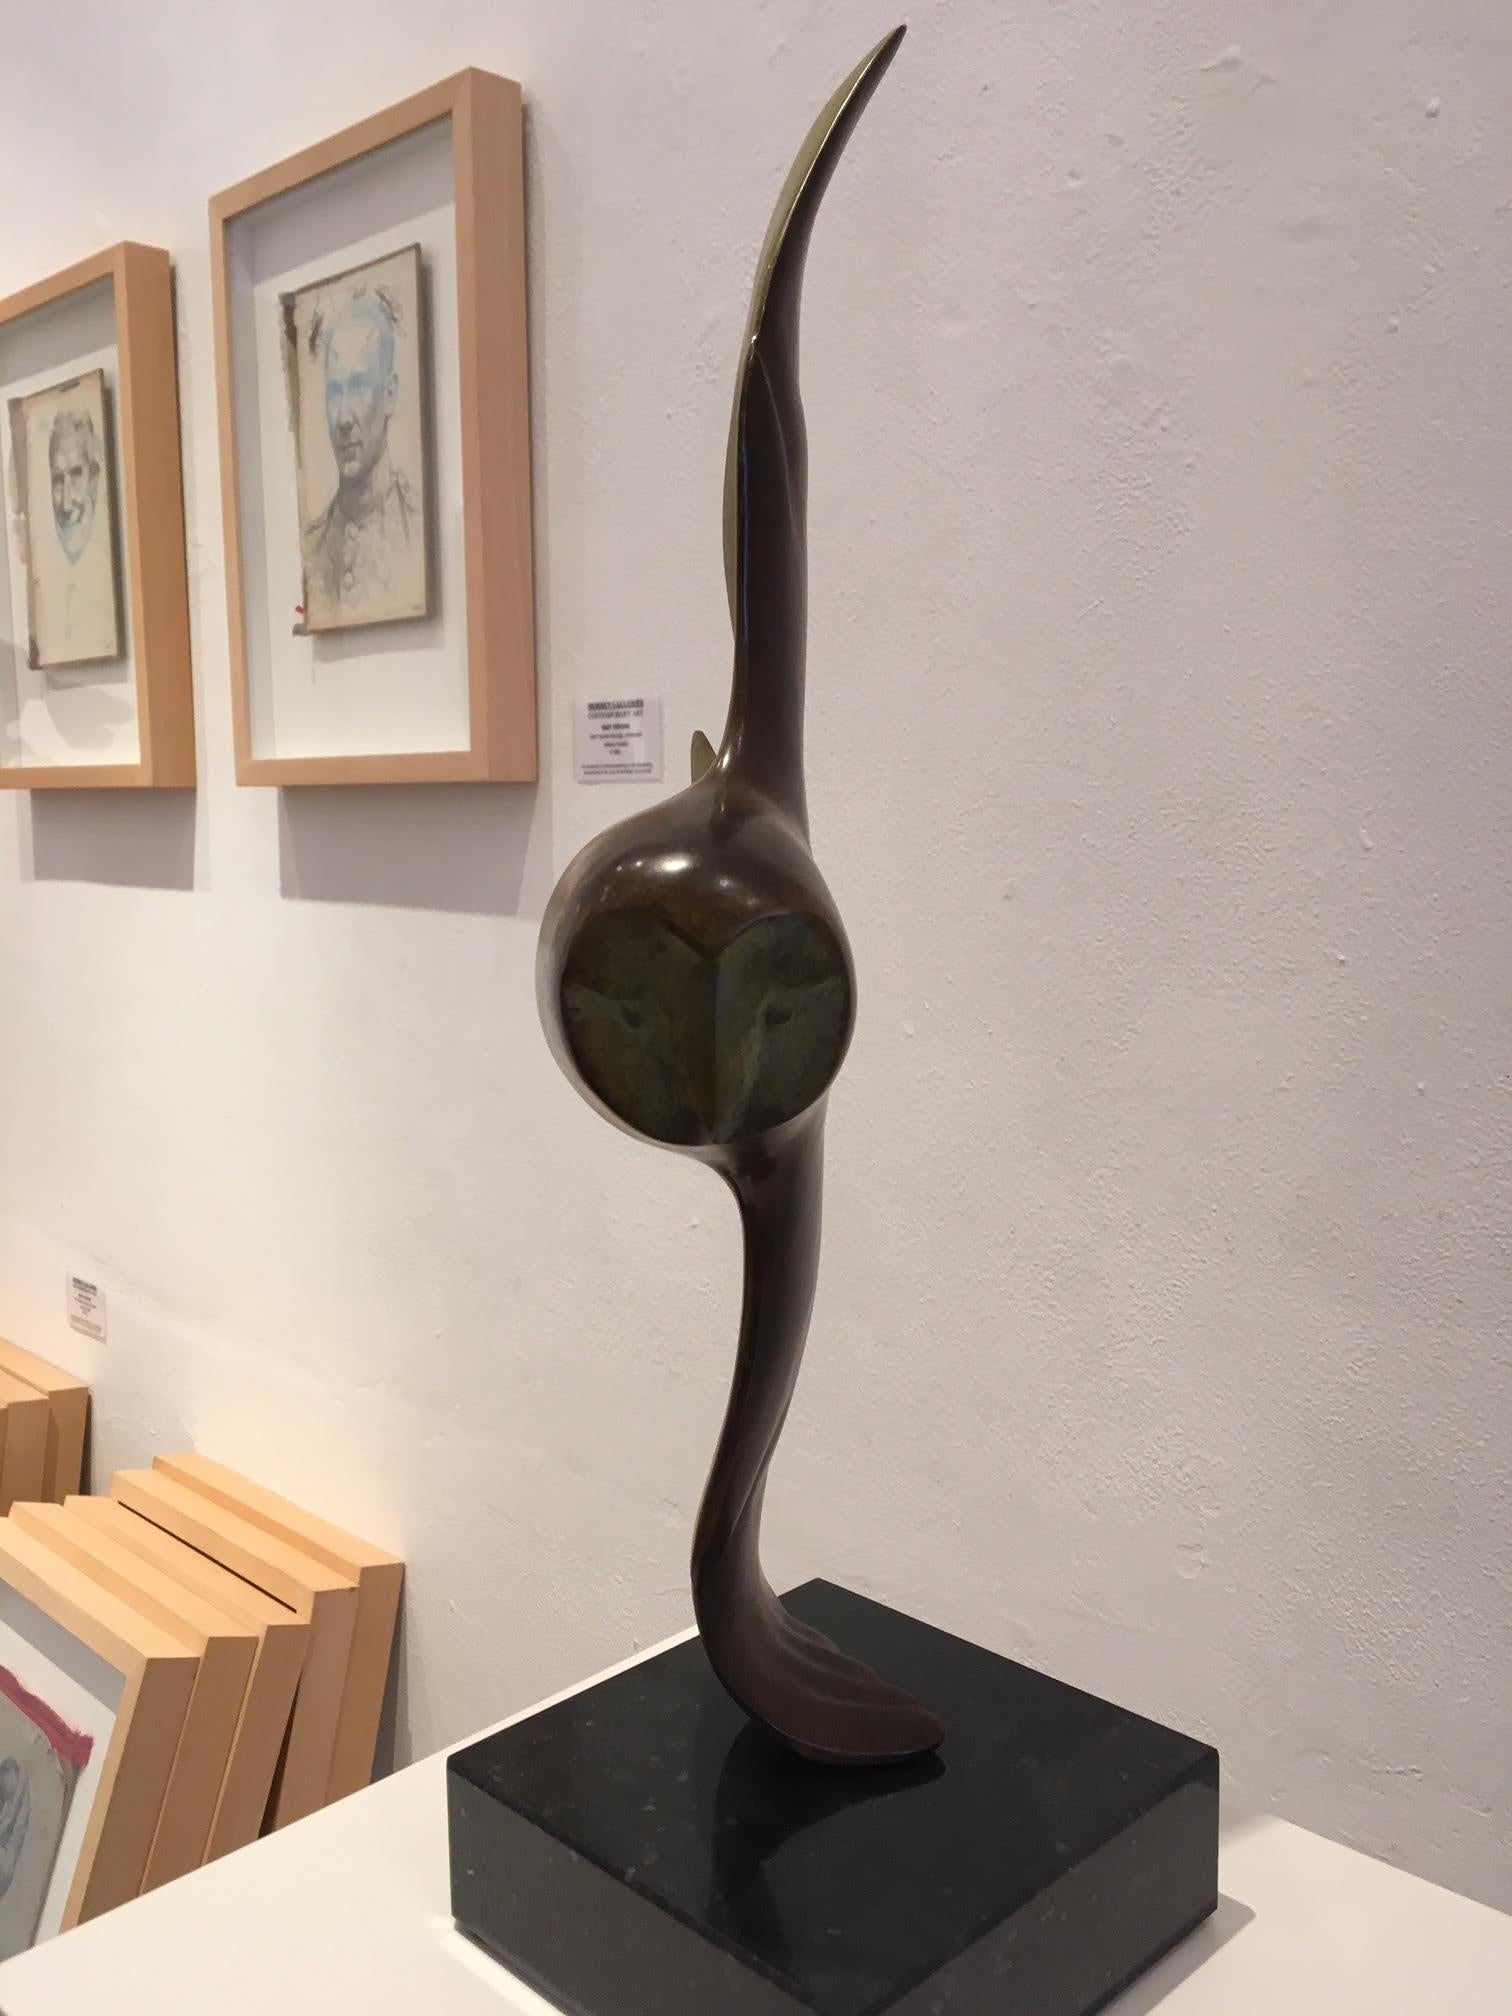 Vliegende Uil no. 4 Hibou volant Sculpture en bronze Animal 
Evert den Hartog (né à Groot-Ammers, aux Pays-Bas, en 1949) a suivi une formation de sculpteur à l'Académie des arts visuels de Rotterdam. Dans les années 1971-1976, ses professeurs de